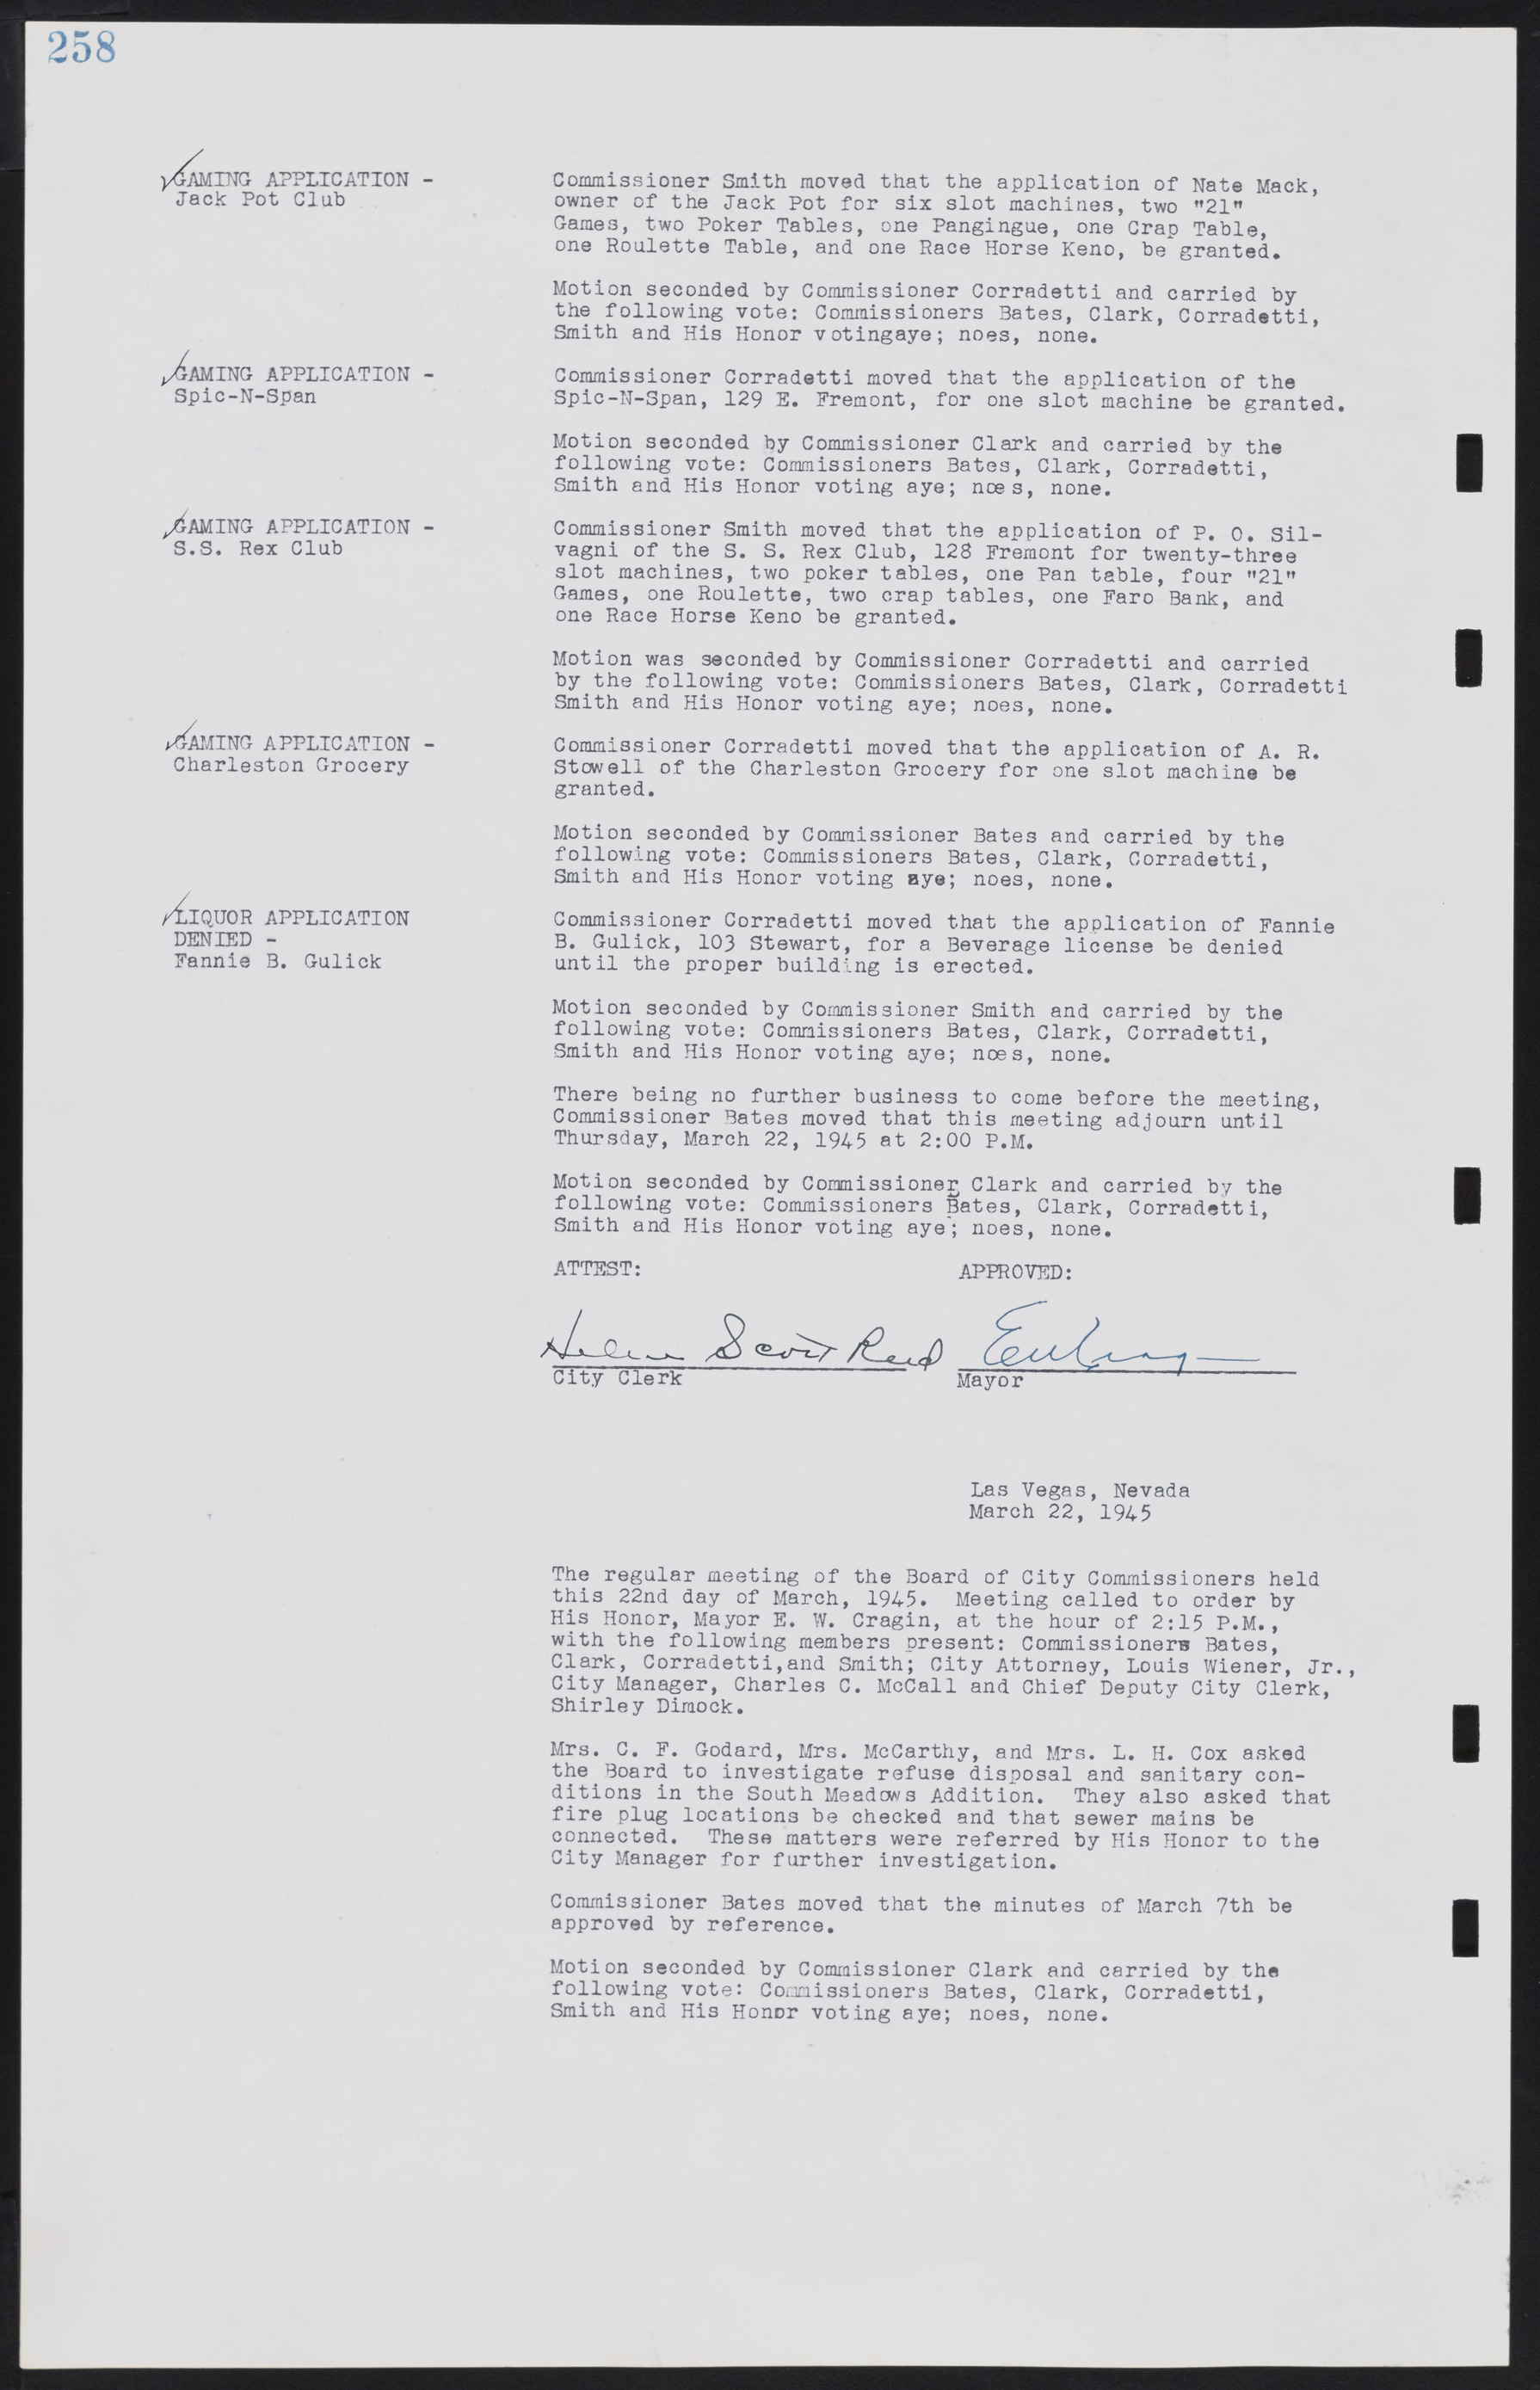 Las Vegas City Commission Minutes, August 11, 1942 to December 30, 1946, lvc000005-280